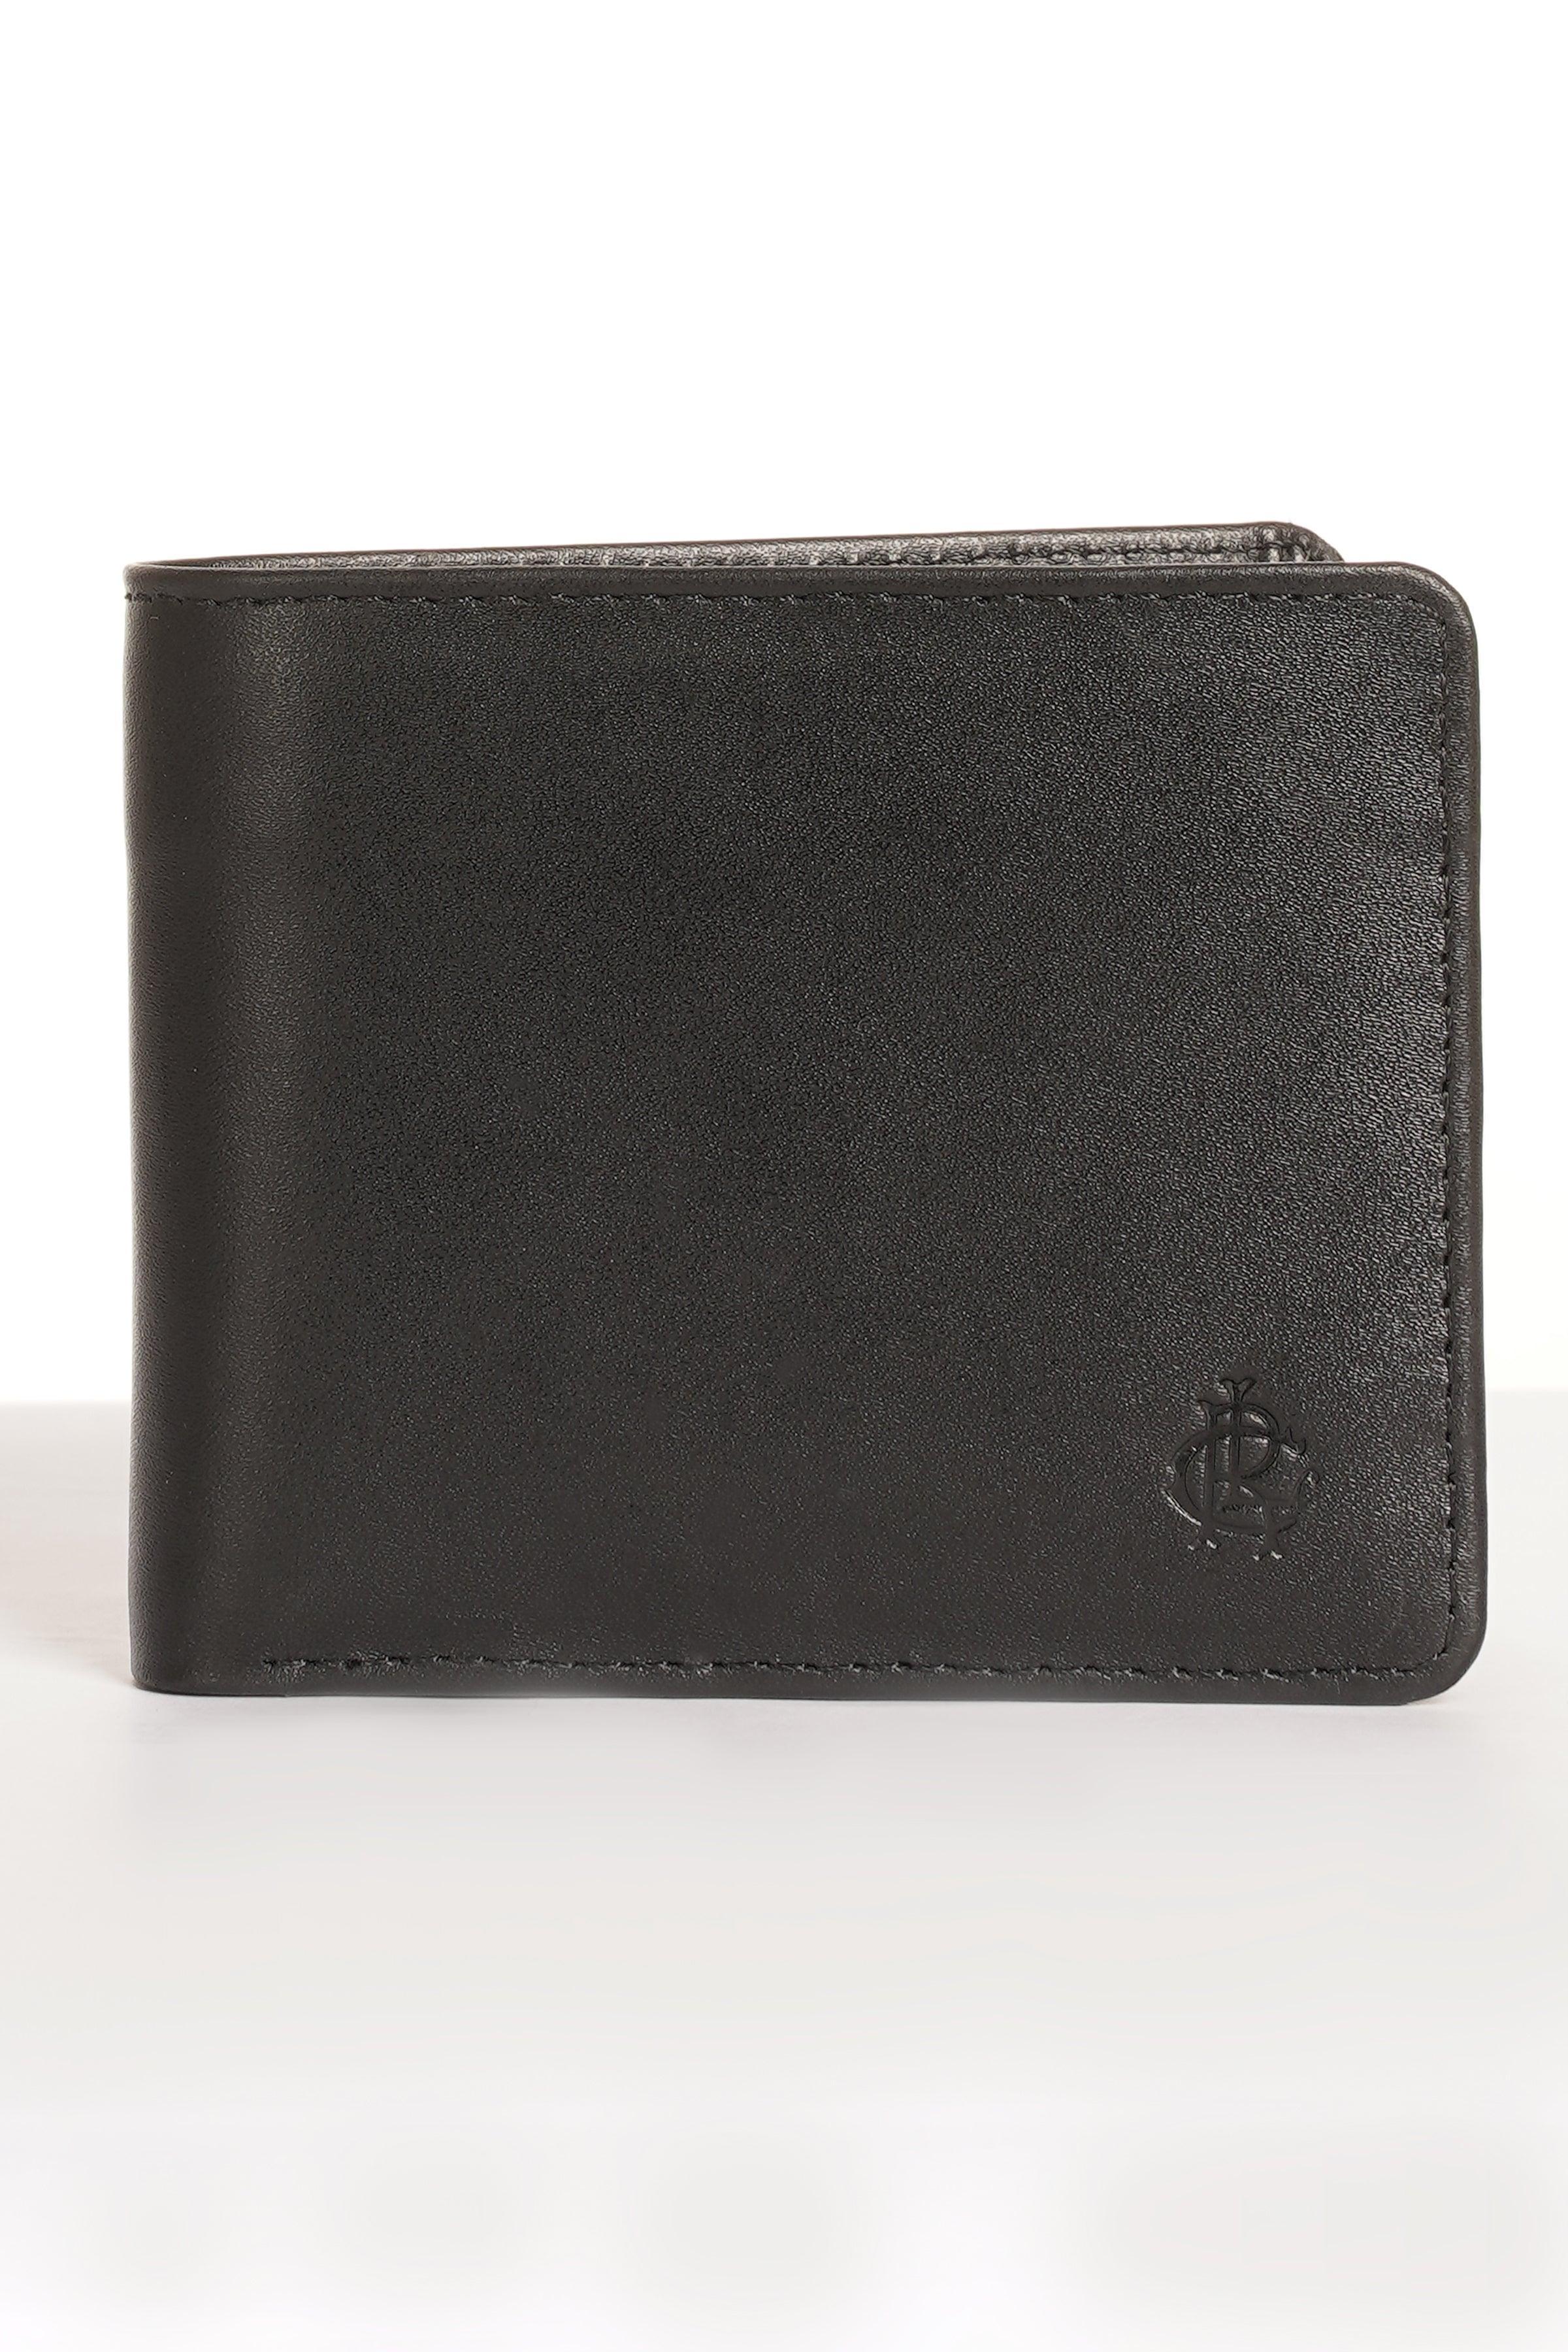 WoodLand gents wallet.... | Gents wallet, Wallet, Gent